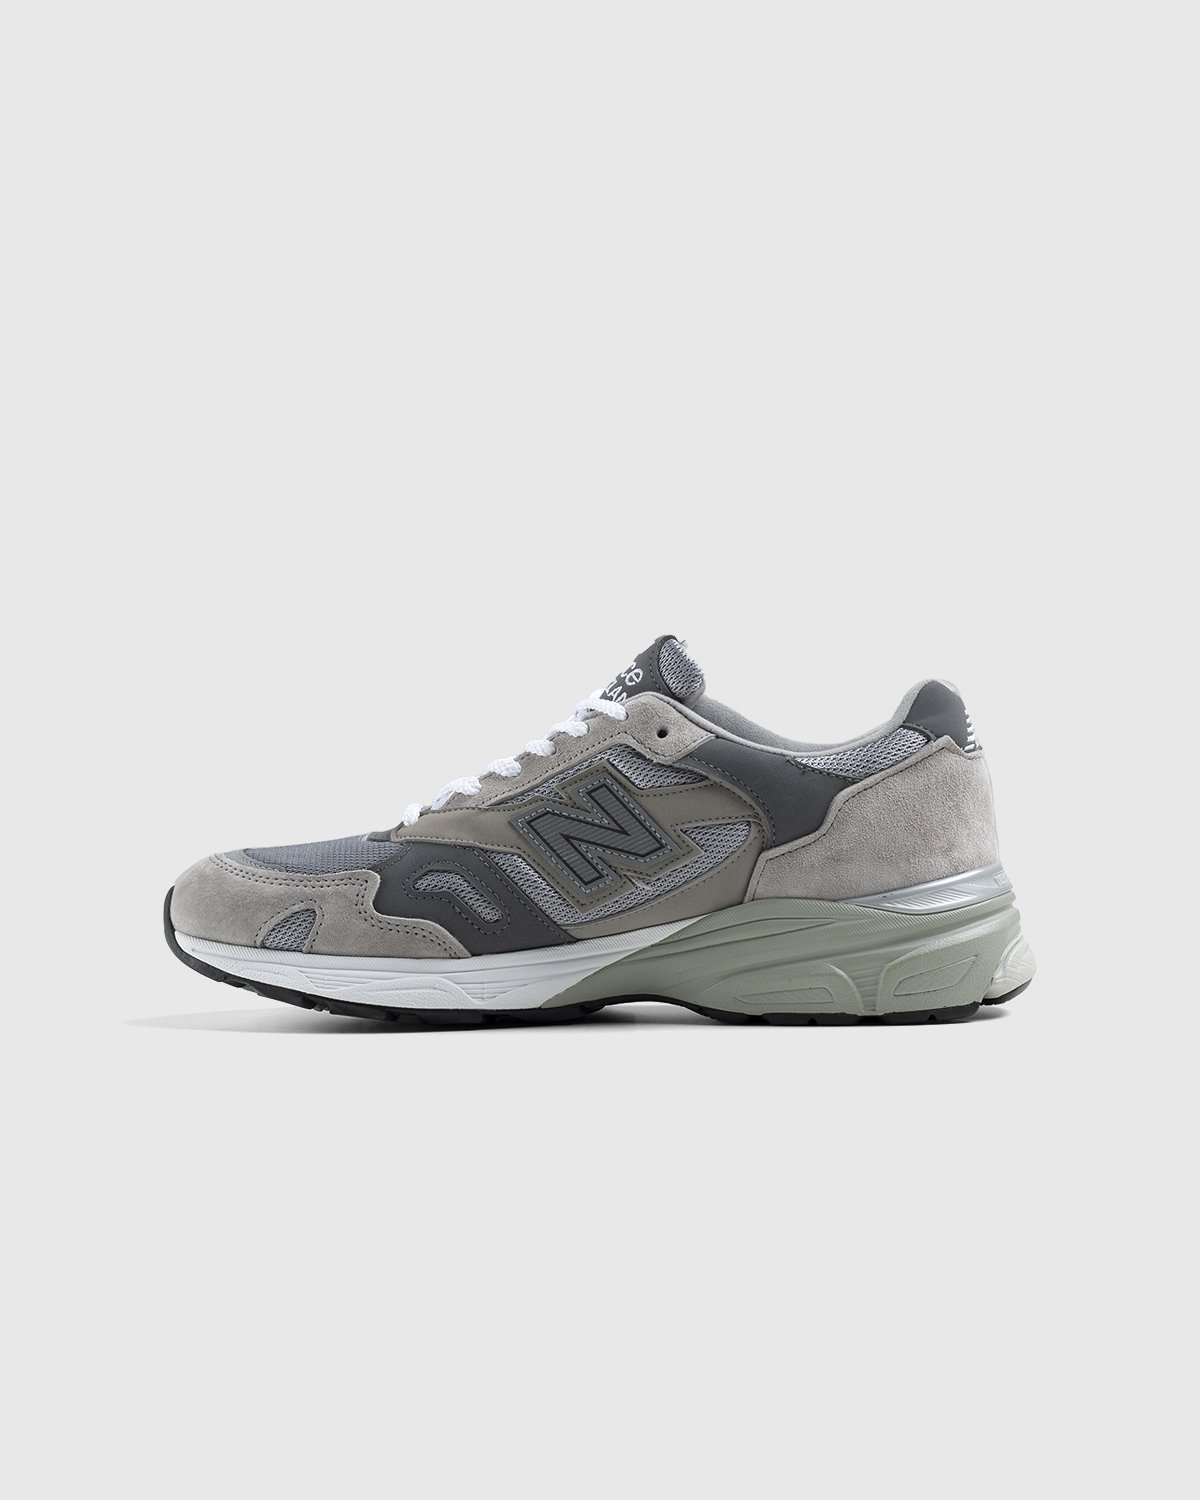 New Balance - M920GRY Grey - Footwear - Grey - Image 2